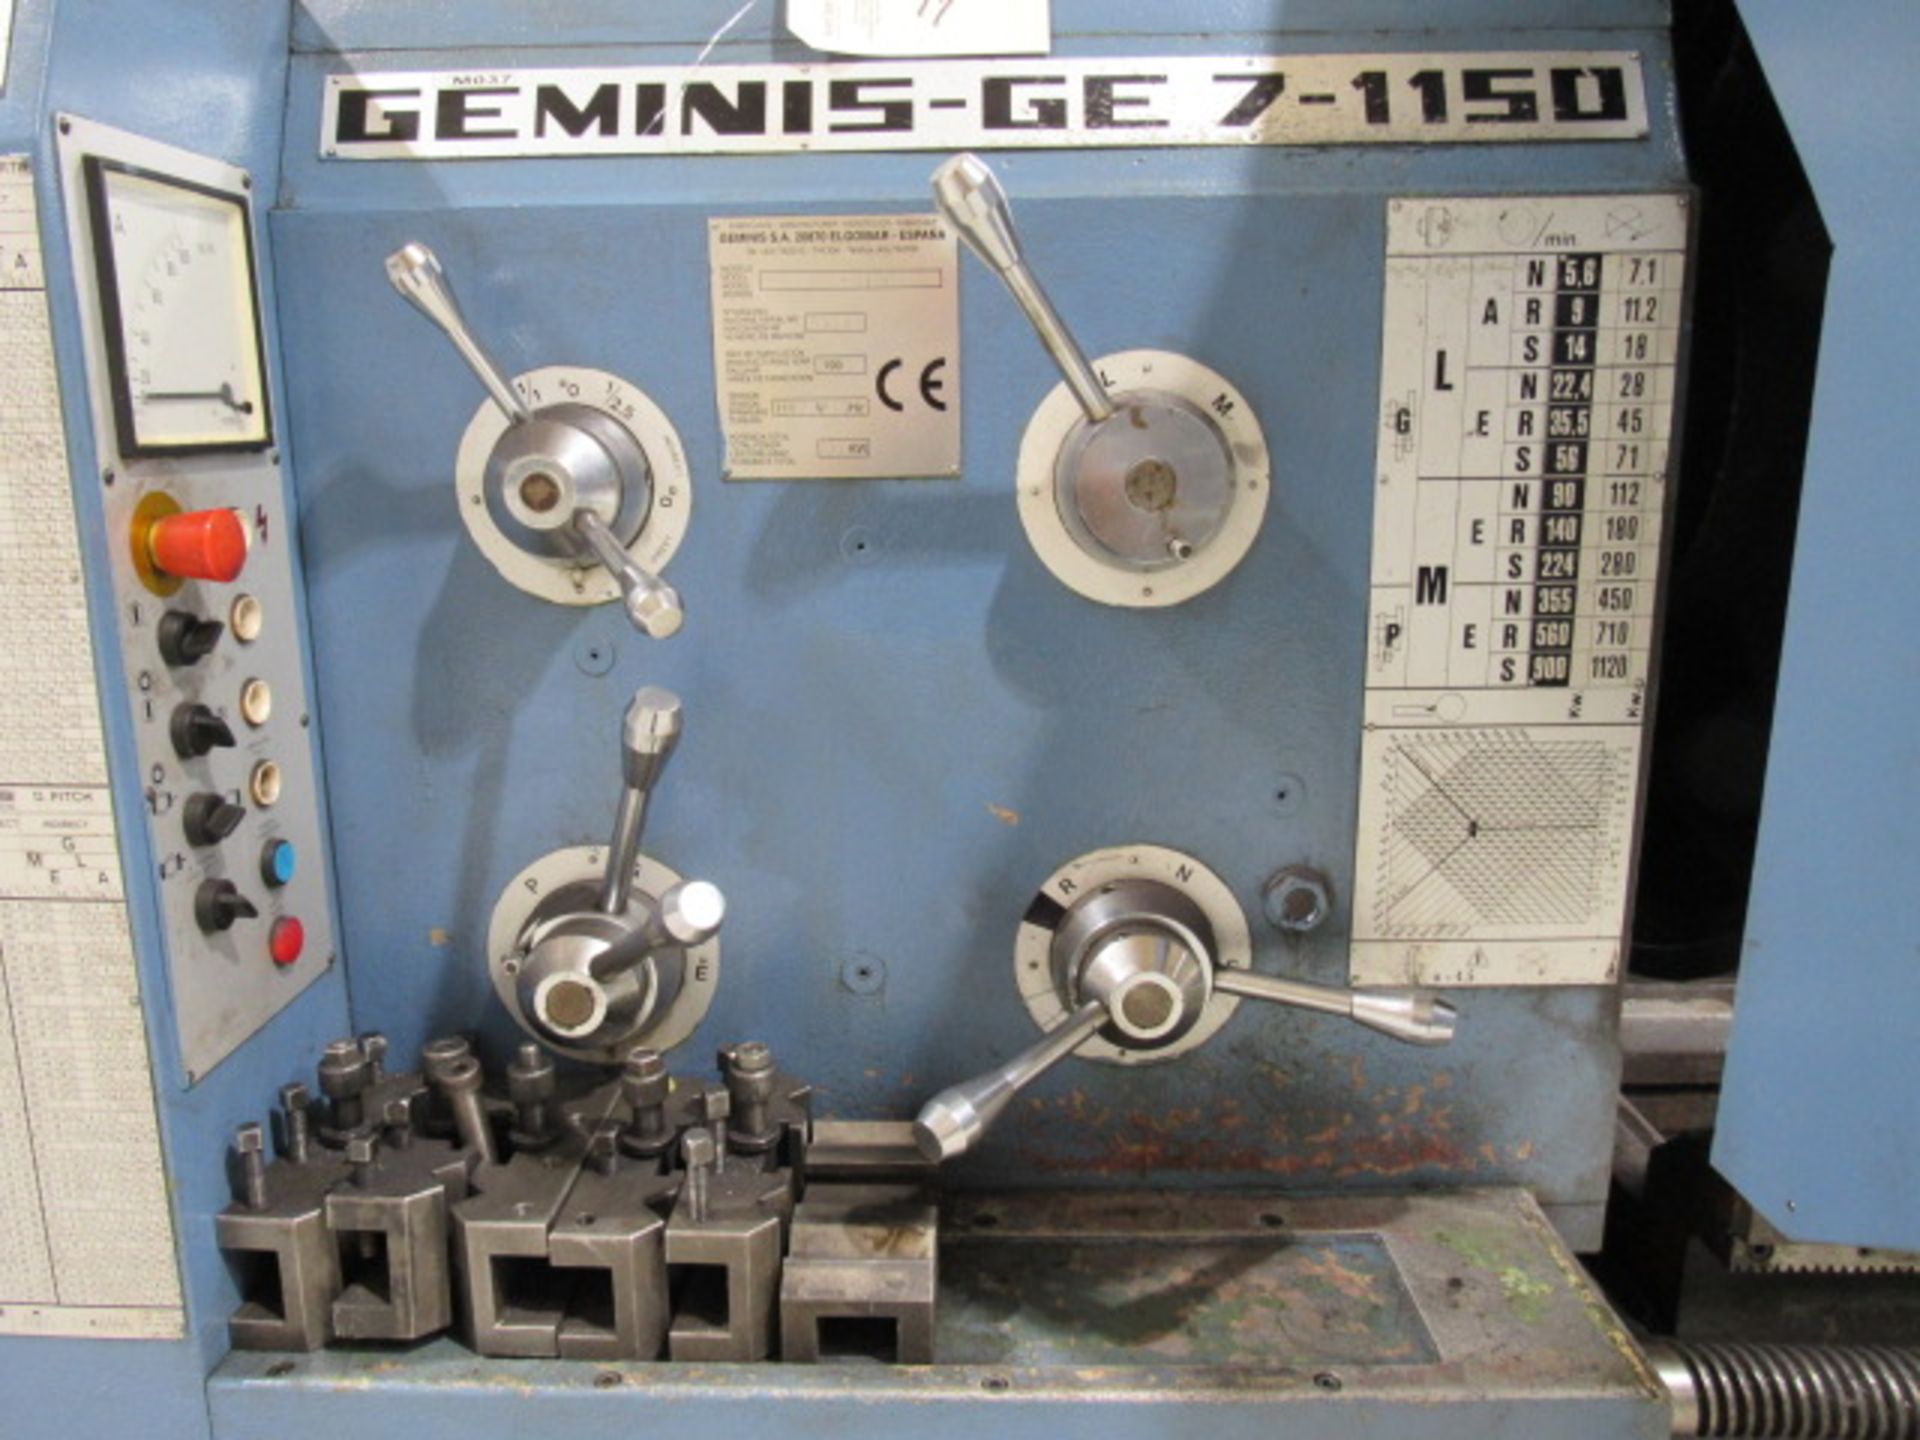 Geminis GE 7-1150 Engine Lathe - Image 3 of 8